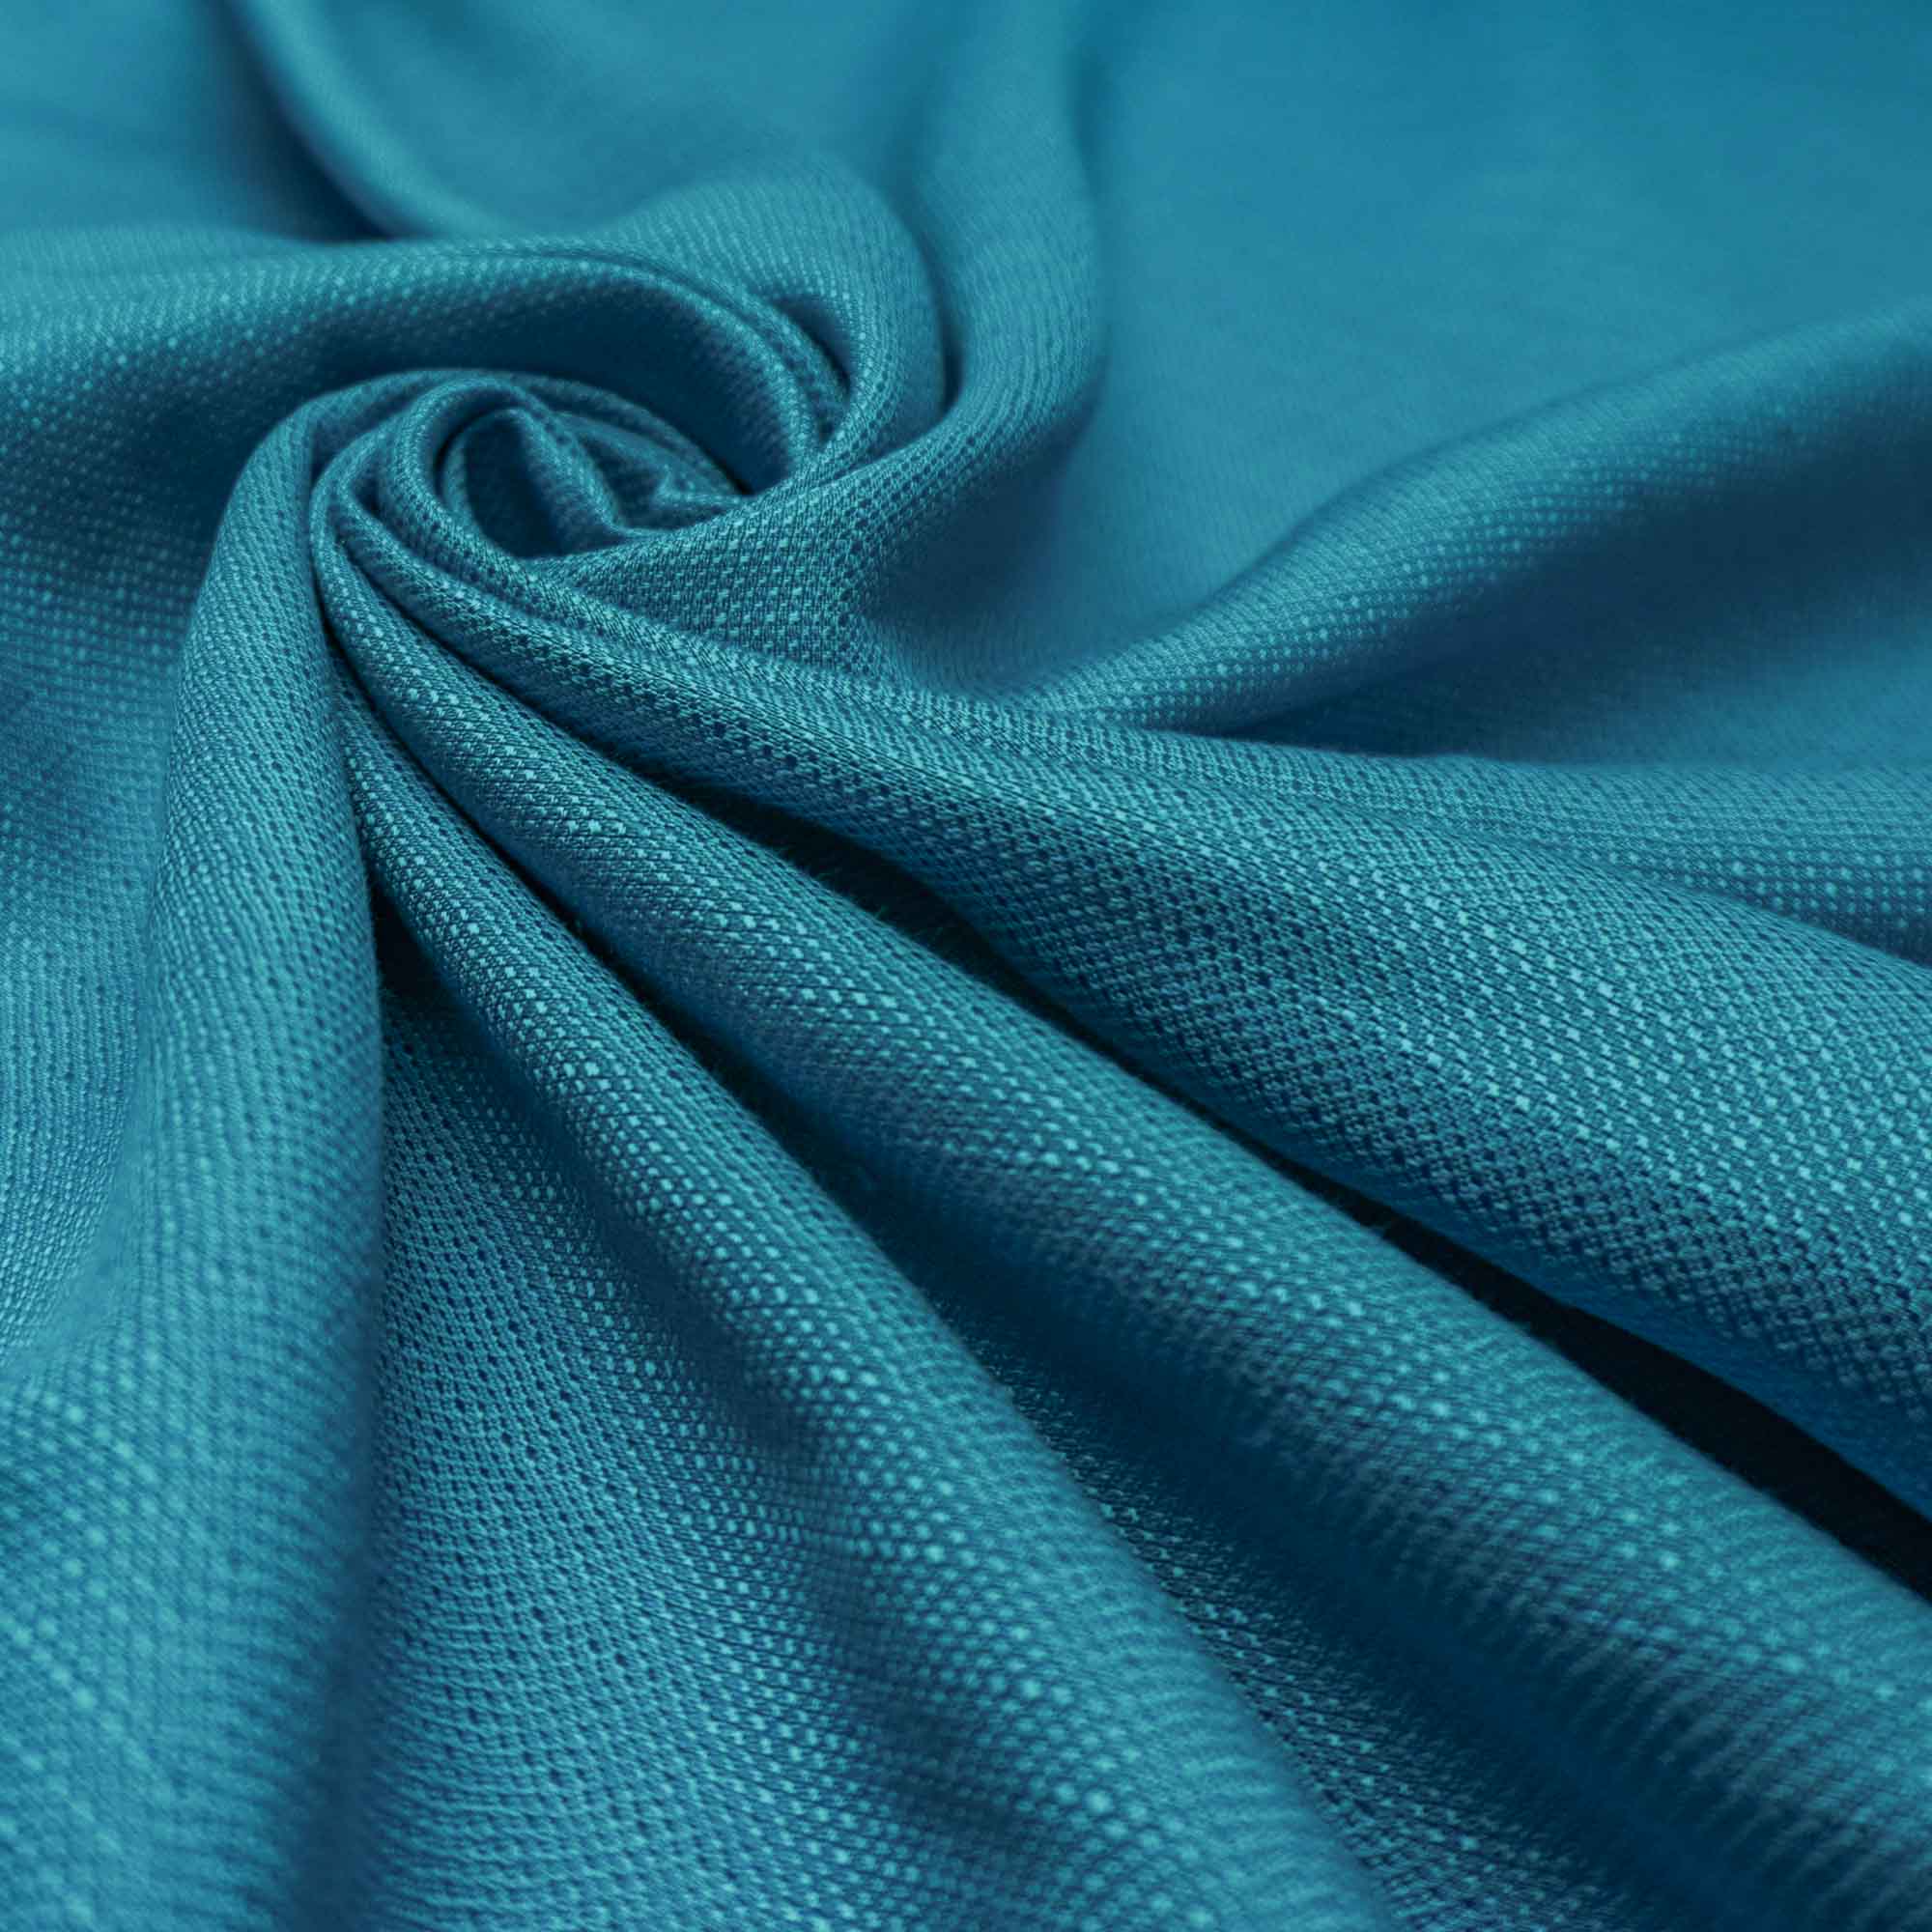 Tecido linho misto azul turquesa (tecido italiano legítimo)